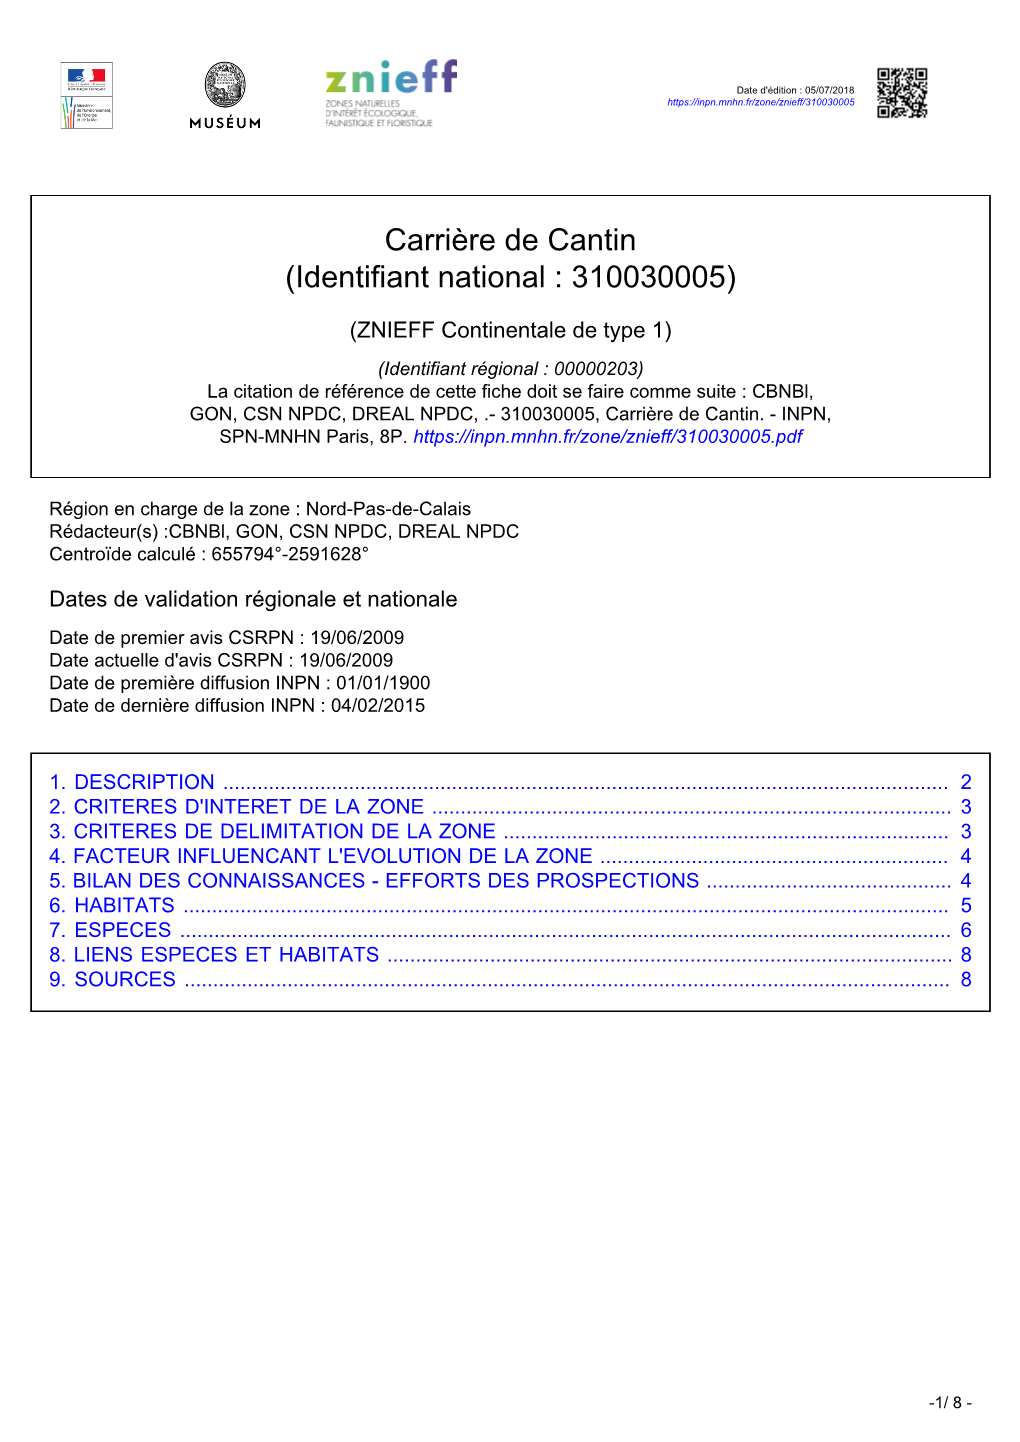 Carrière De Cantin (Identifiant National : 310030005)